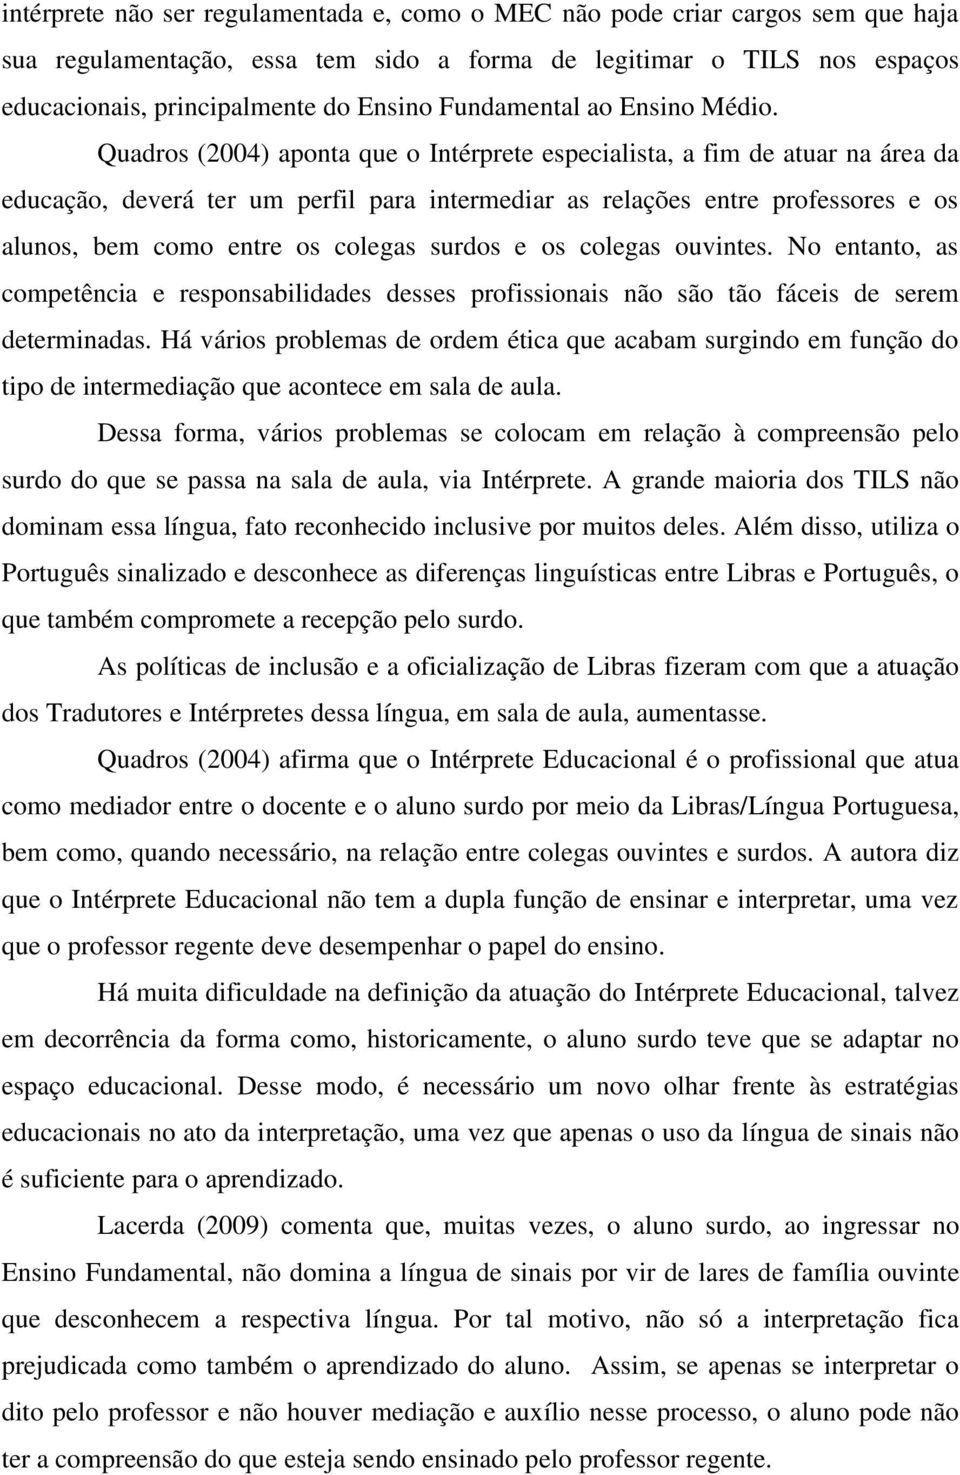 Quadros (2004) aponta que o Intérprete especialista, a fim de atuar na área da educação, deverá ter um perfil para intermediar as relações entre professores e os alunos, bem como entre os colegas